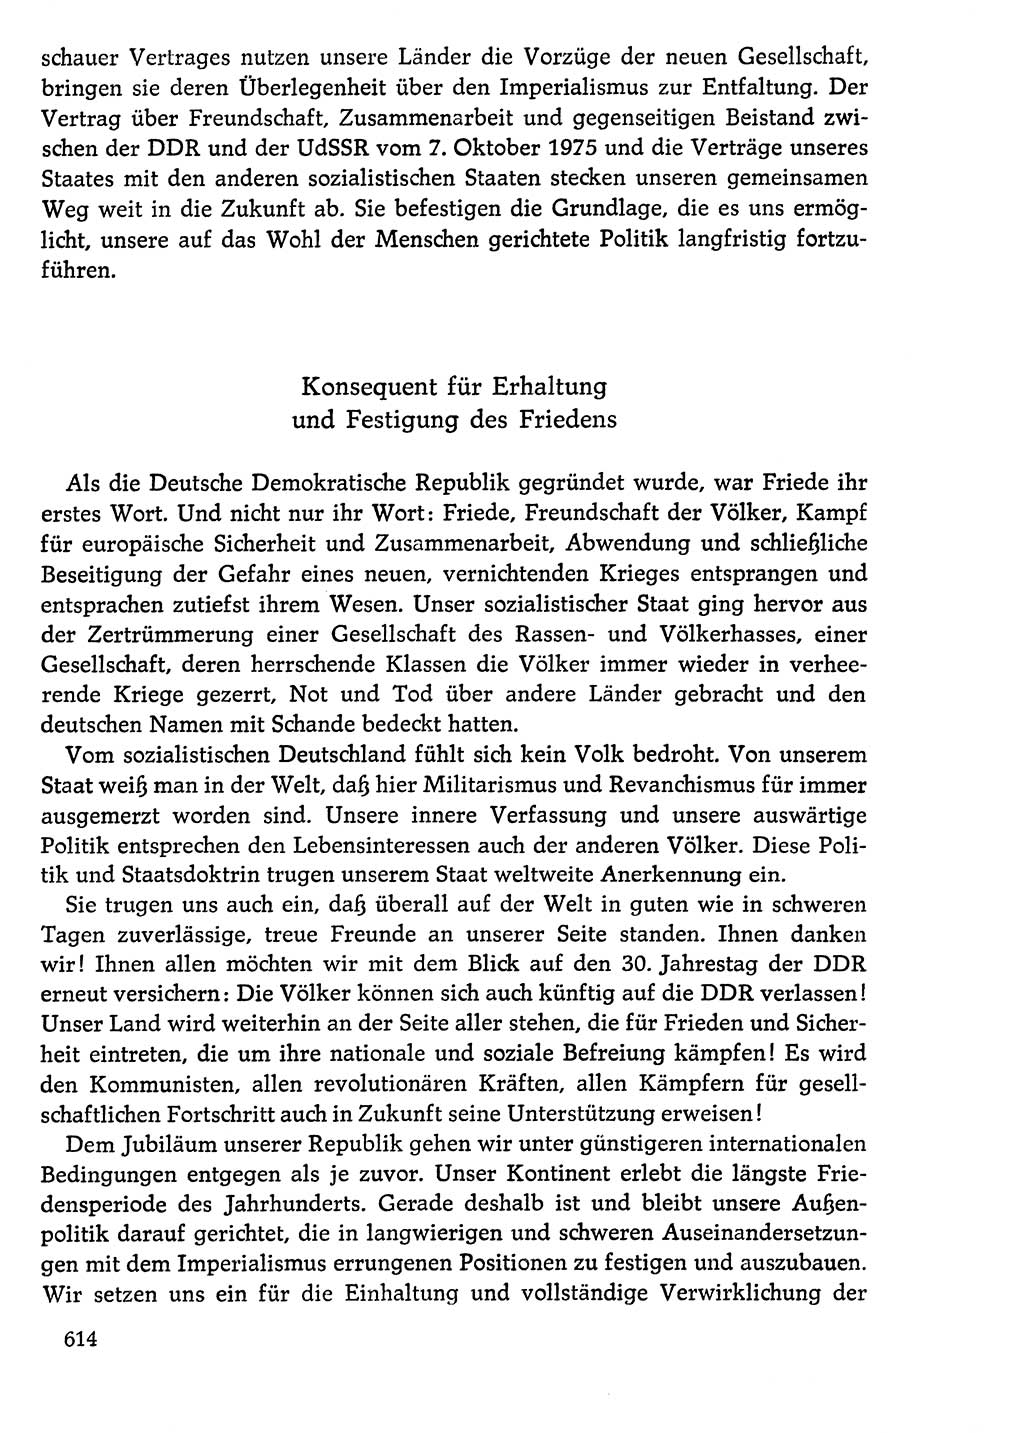 Dokumente der Sozialistischen Einheitspartei Deutschlands (SED) [Deutsche Demokratische Republik (DDR)] 1976-1977, Seite 614 (Dok. SED DDR 1976-1977, S. 614)